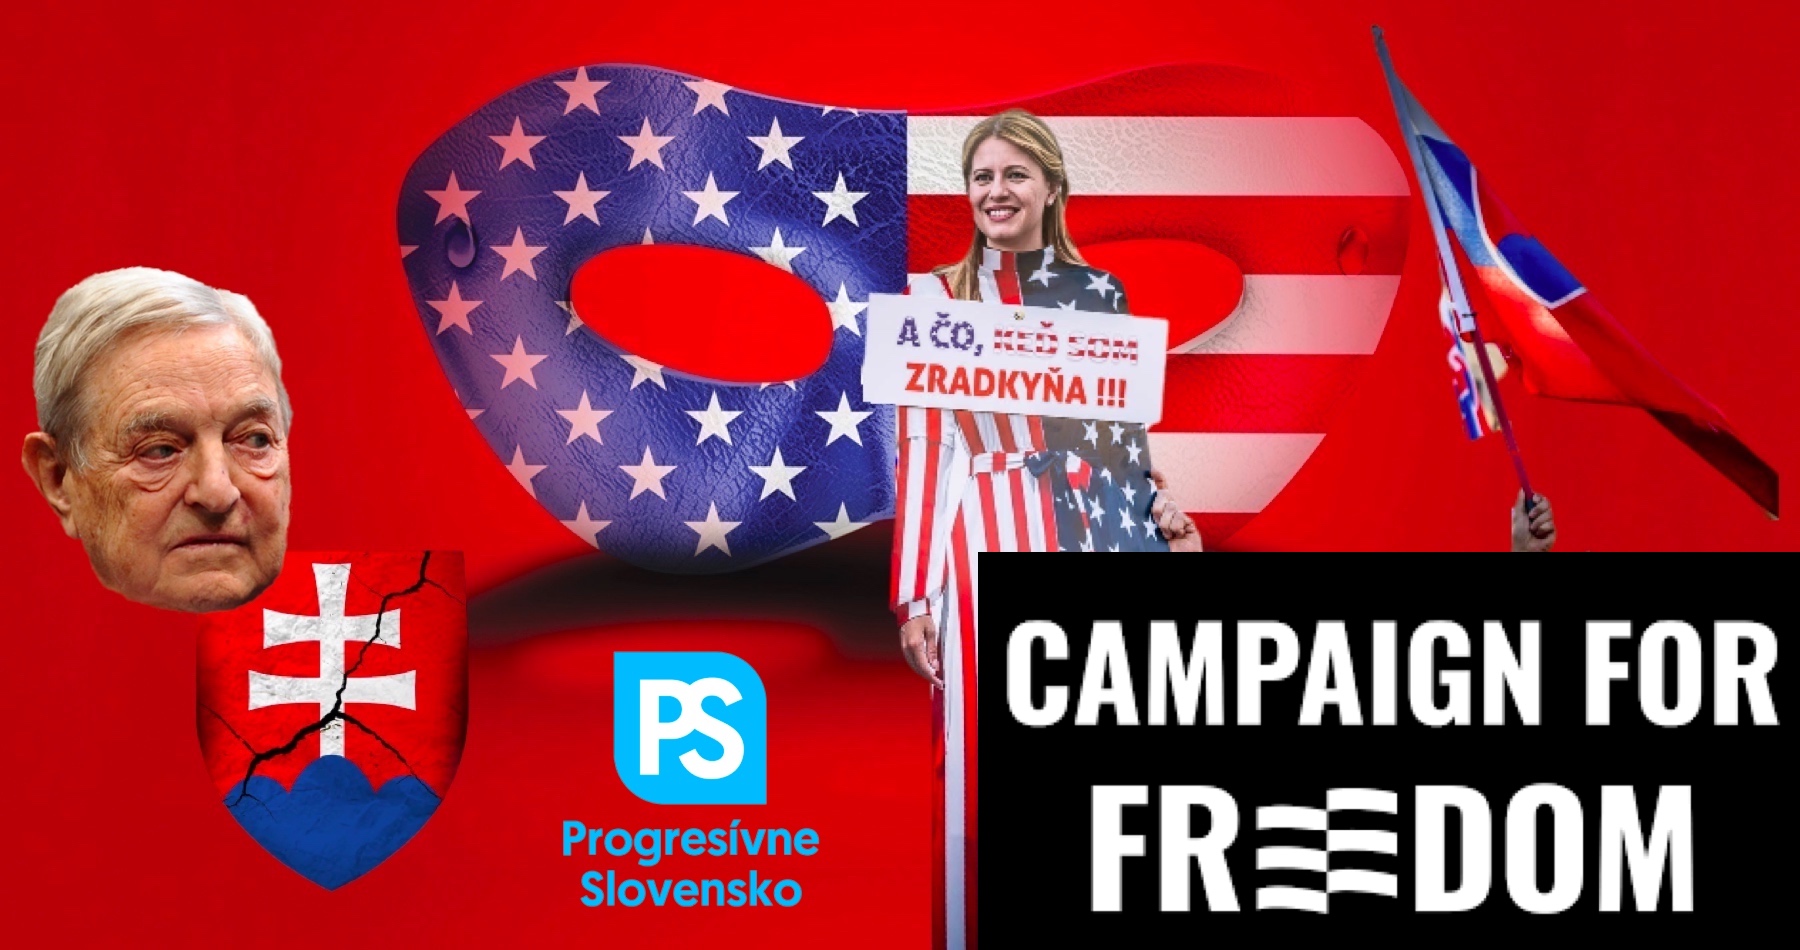 Slovenské volby čelí vměšování narychlo založené mimovládní organizace v Londýně, která zaplavuje slovenský YouTube agitačními reklamami ve slovenském jazyce a straší Putinem a ruskou okupací